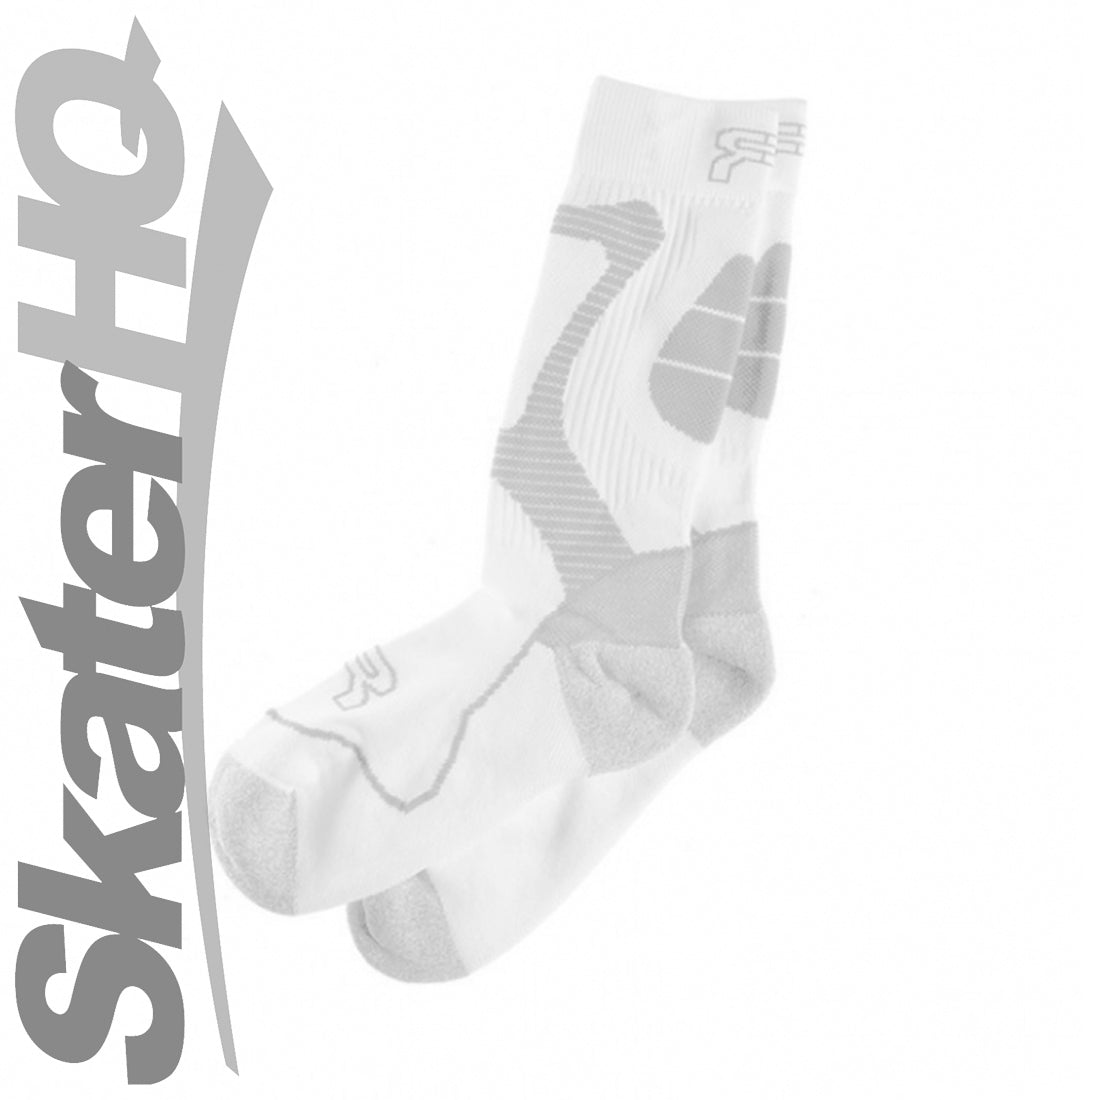 FR Nano Sport Socks White - Small - EU36-38 Apparel Socks